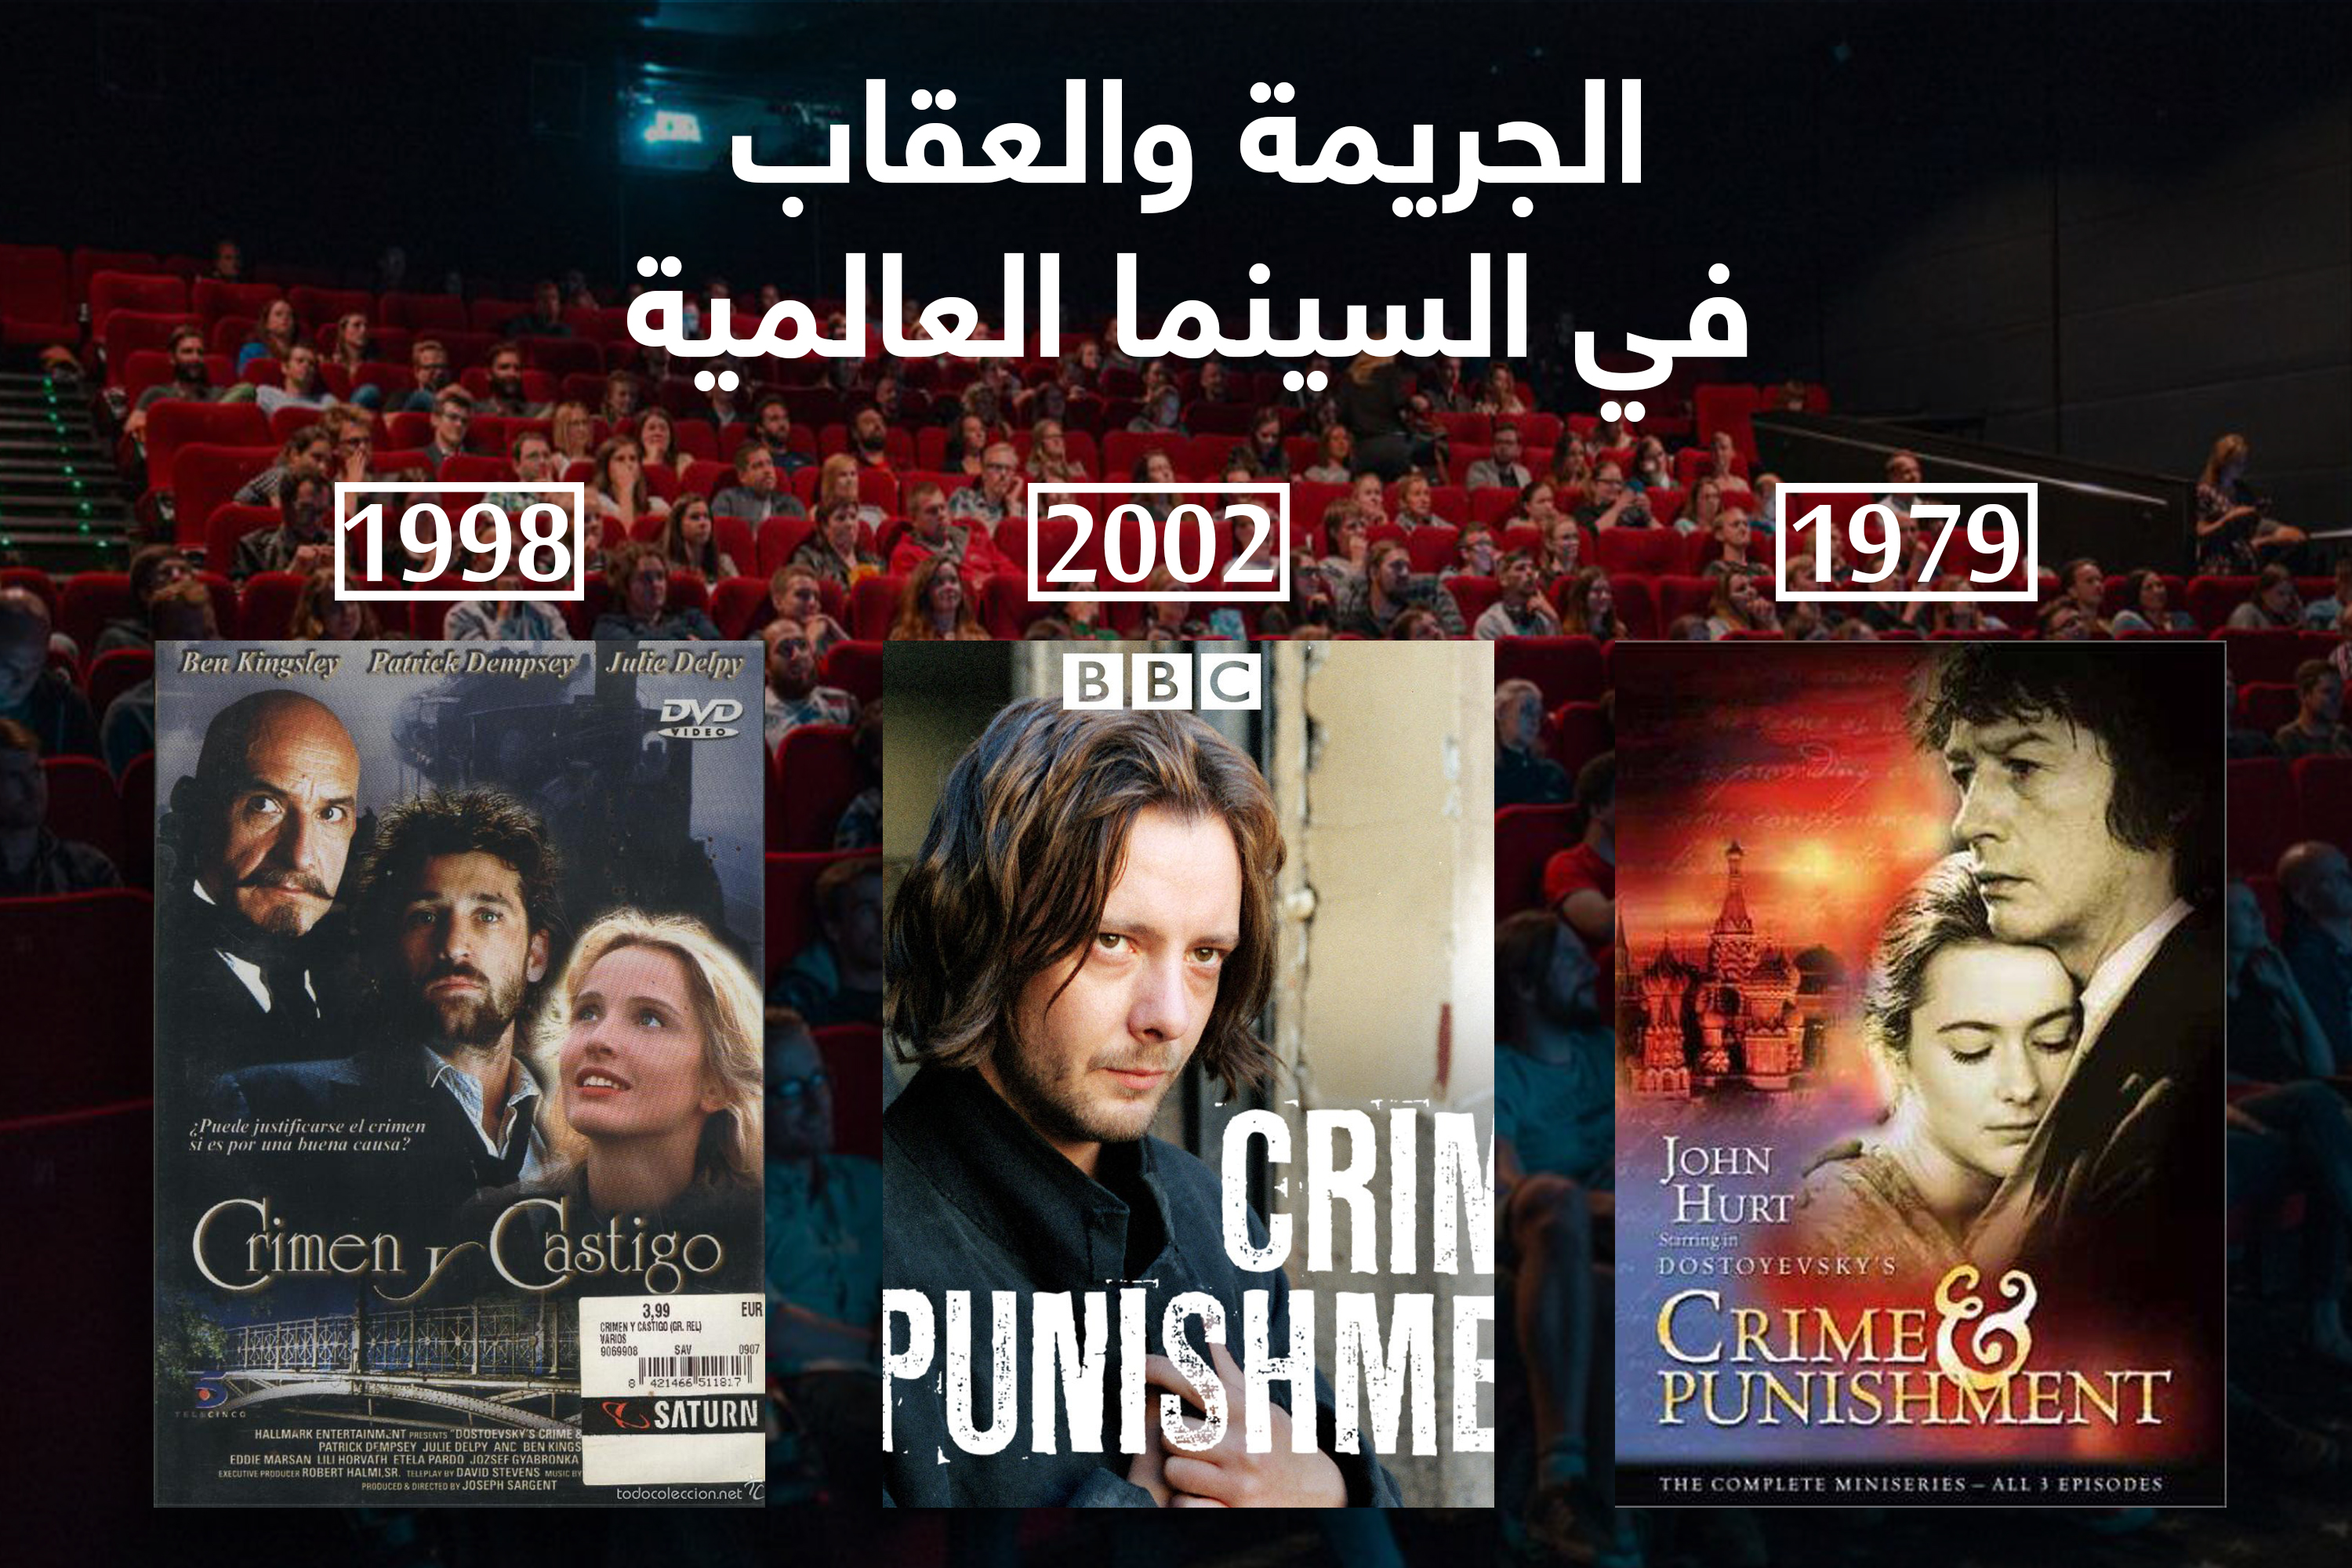 الجريمة والعقاب في السينما العالمية - دوستويفسكي